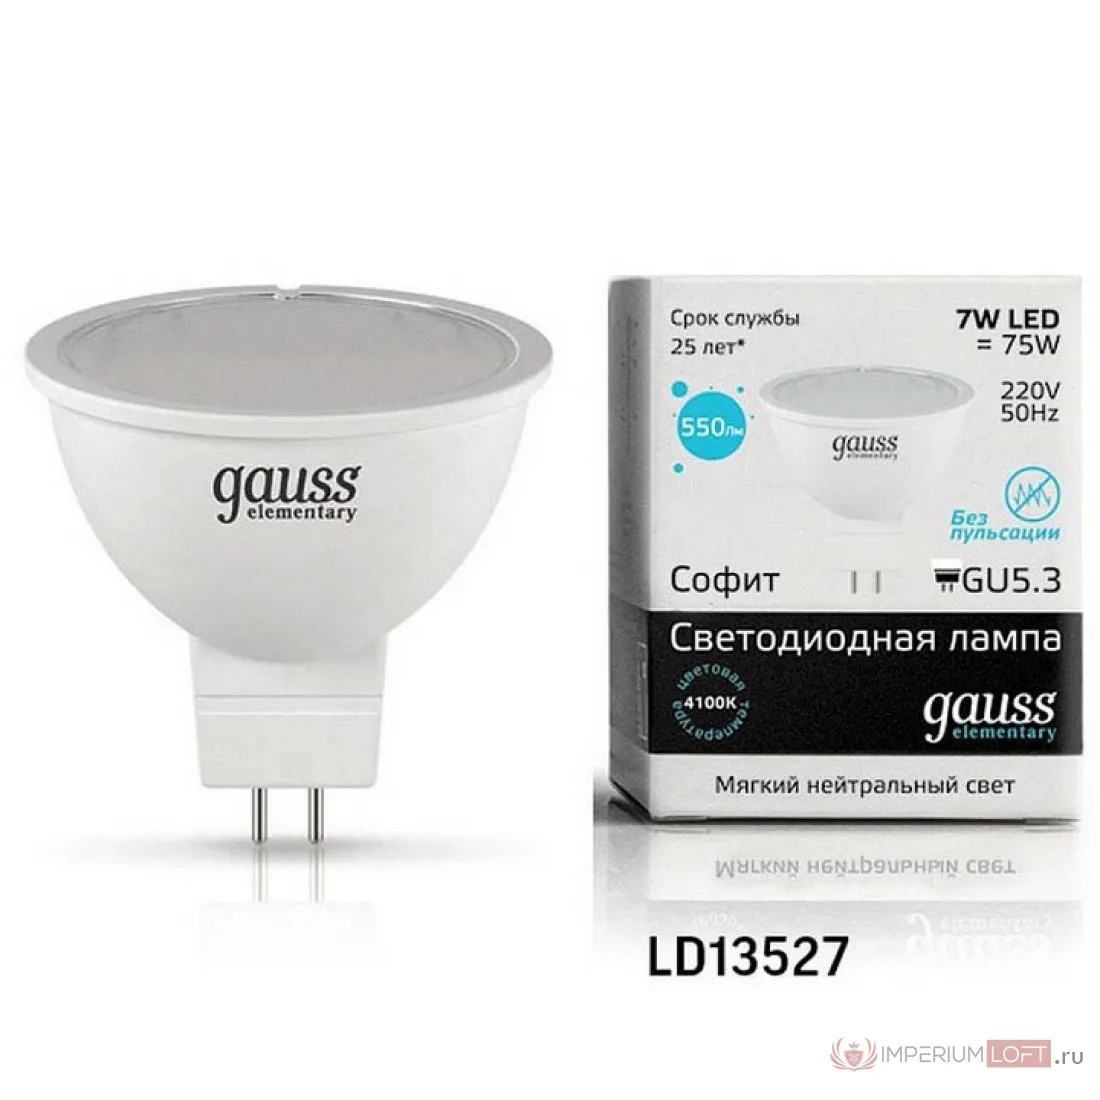 Купить лампочку gu 5.3. Светодиодная лампа Gauss 13527 led Elementary mr16 gu5.3 7w 4100k. Gauss gu5.3 7w. Gauss Elementary gu5.3 7w 4100k. Гаусс gu5.3 3.5w.